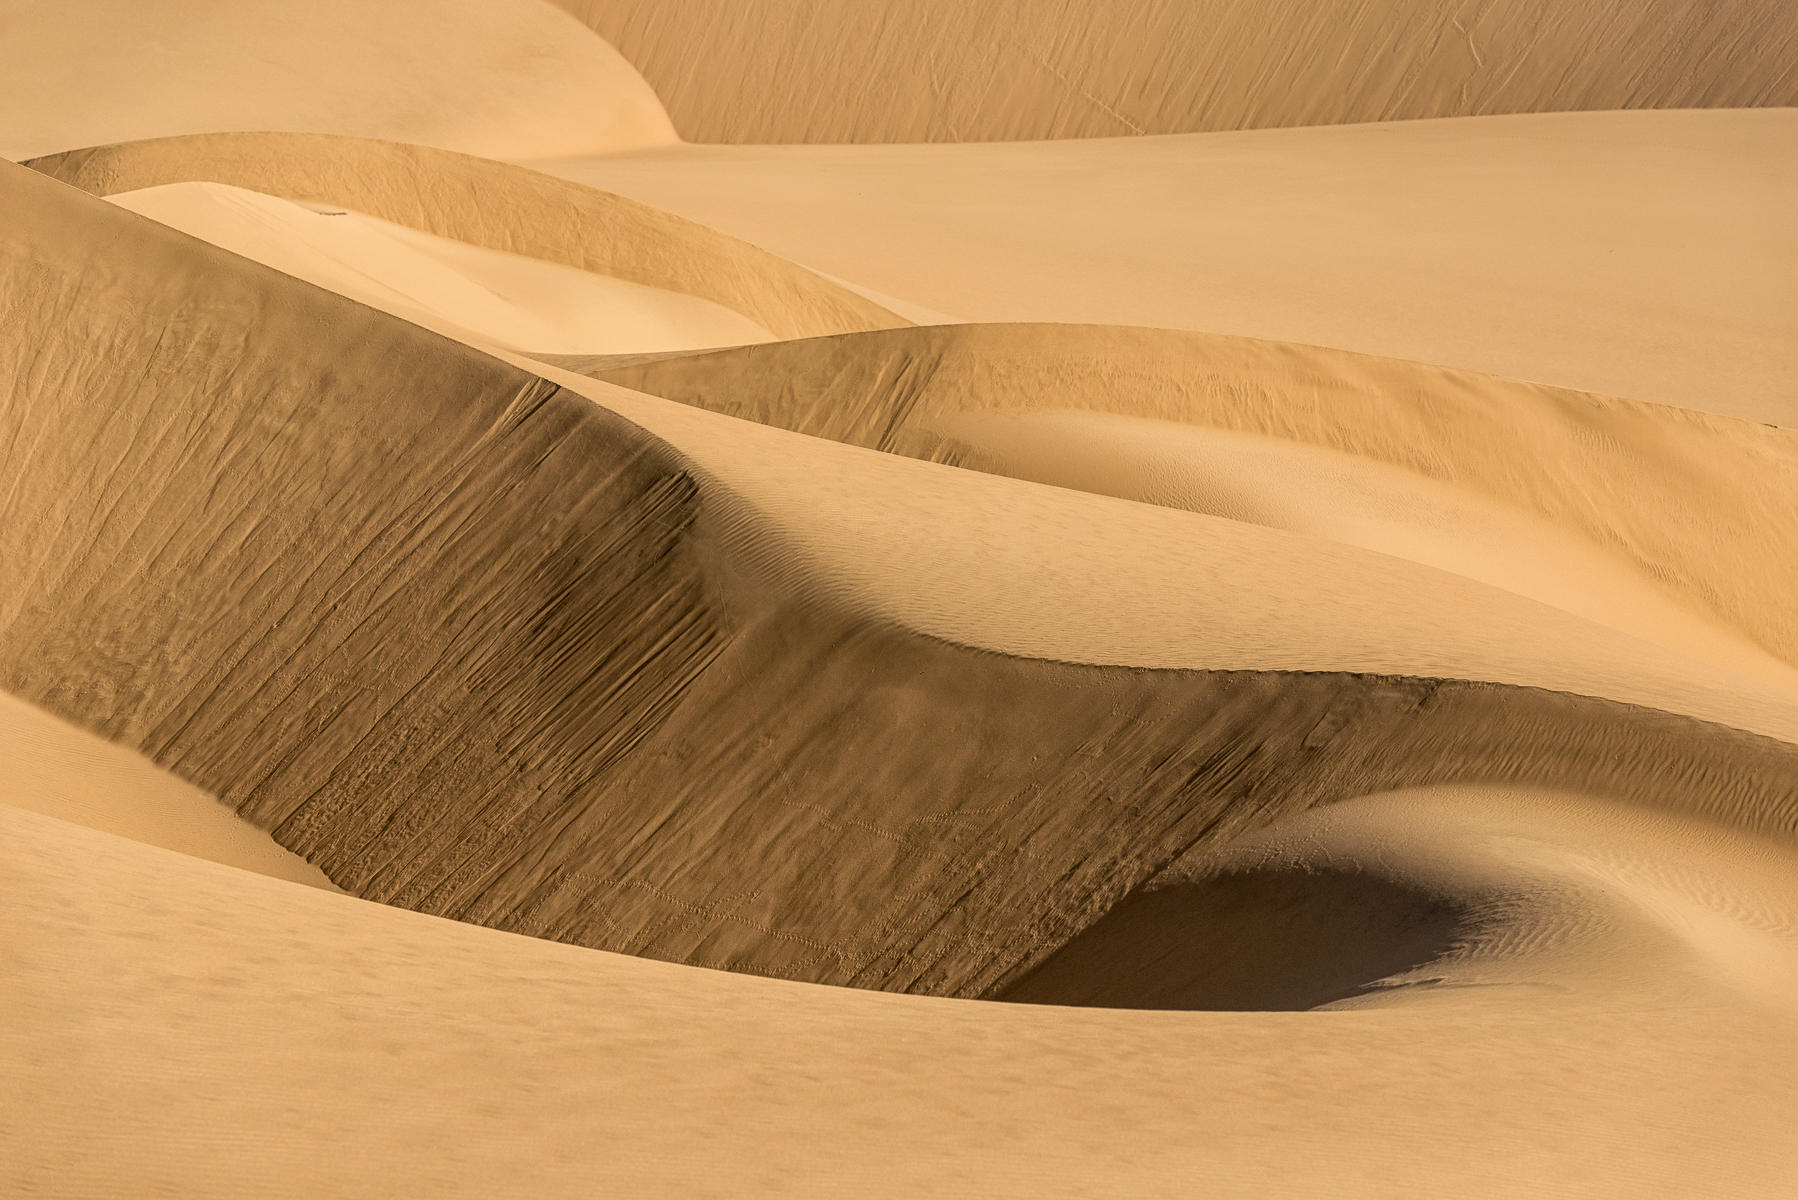 Rounded Dunes : Namibia, The Land of Dunes : ELIZABETH SANJUAN PHOTOGRAPHY